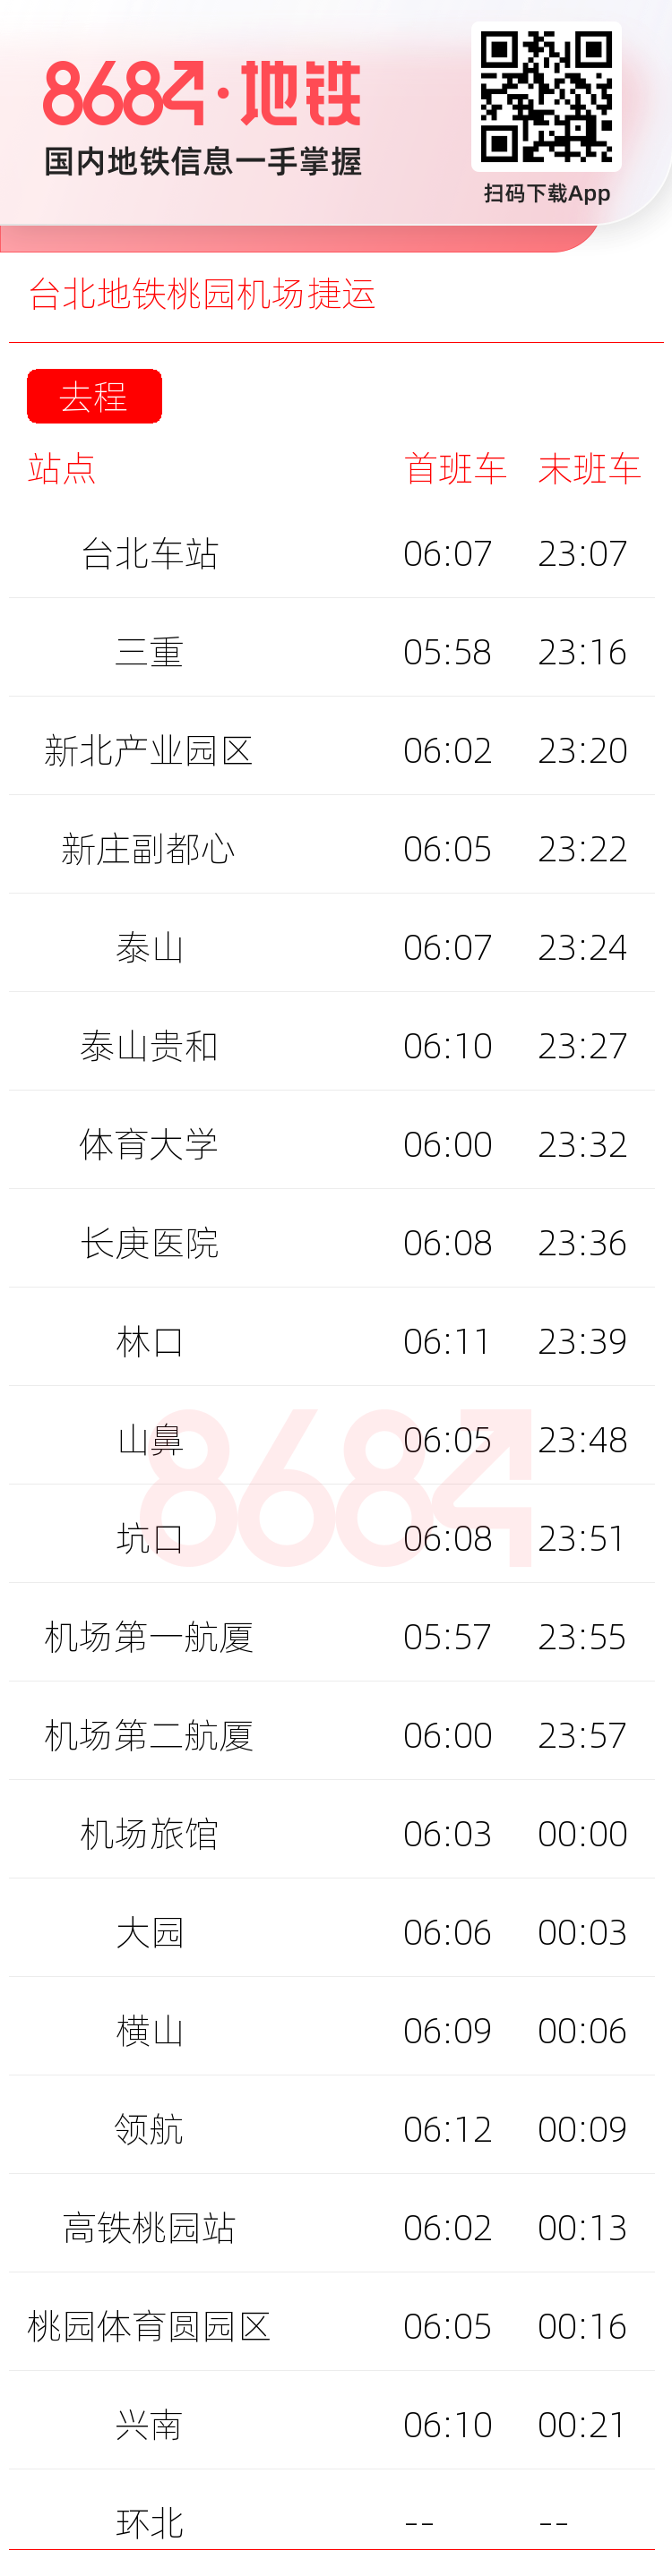 台北地铁桃园机场捷运运营时间表